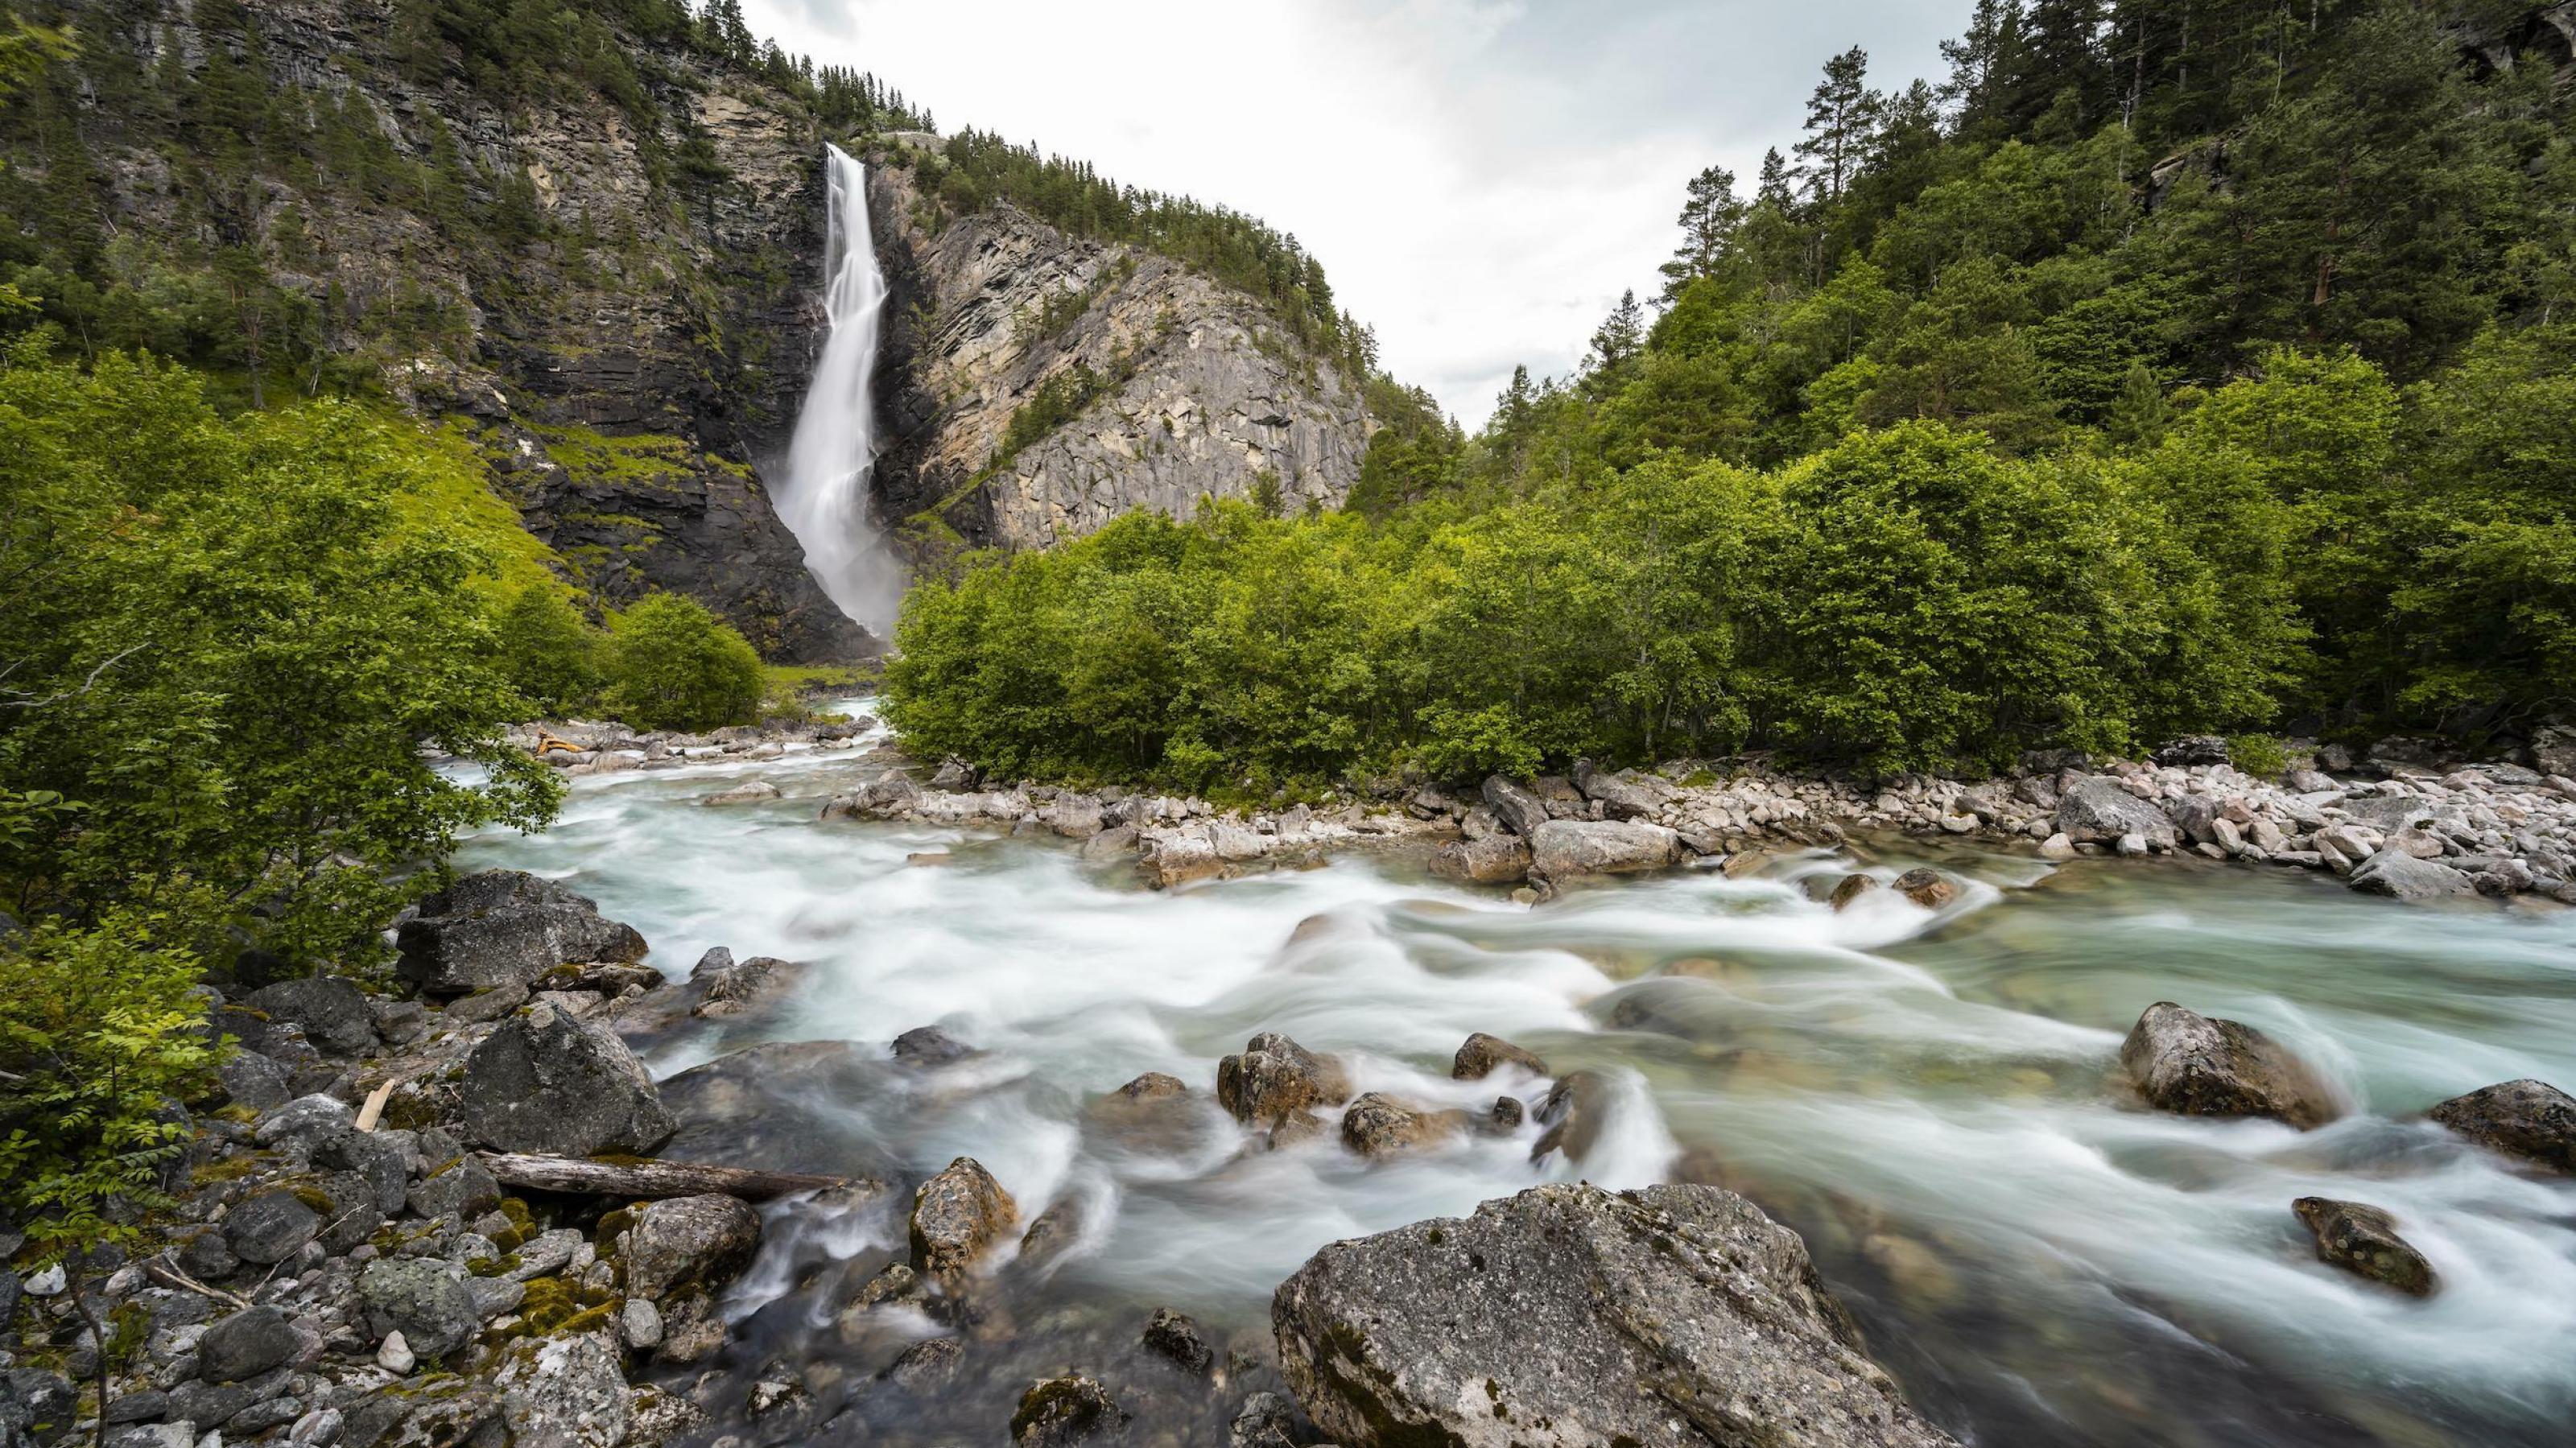 In einer kargen Landschaft mündet ein Wasserfall in einen wilden Fluss, der von Ufervegetation eingesäumt ist.